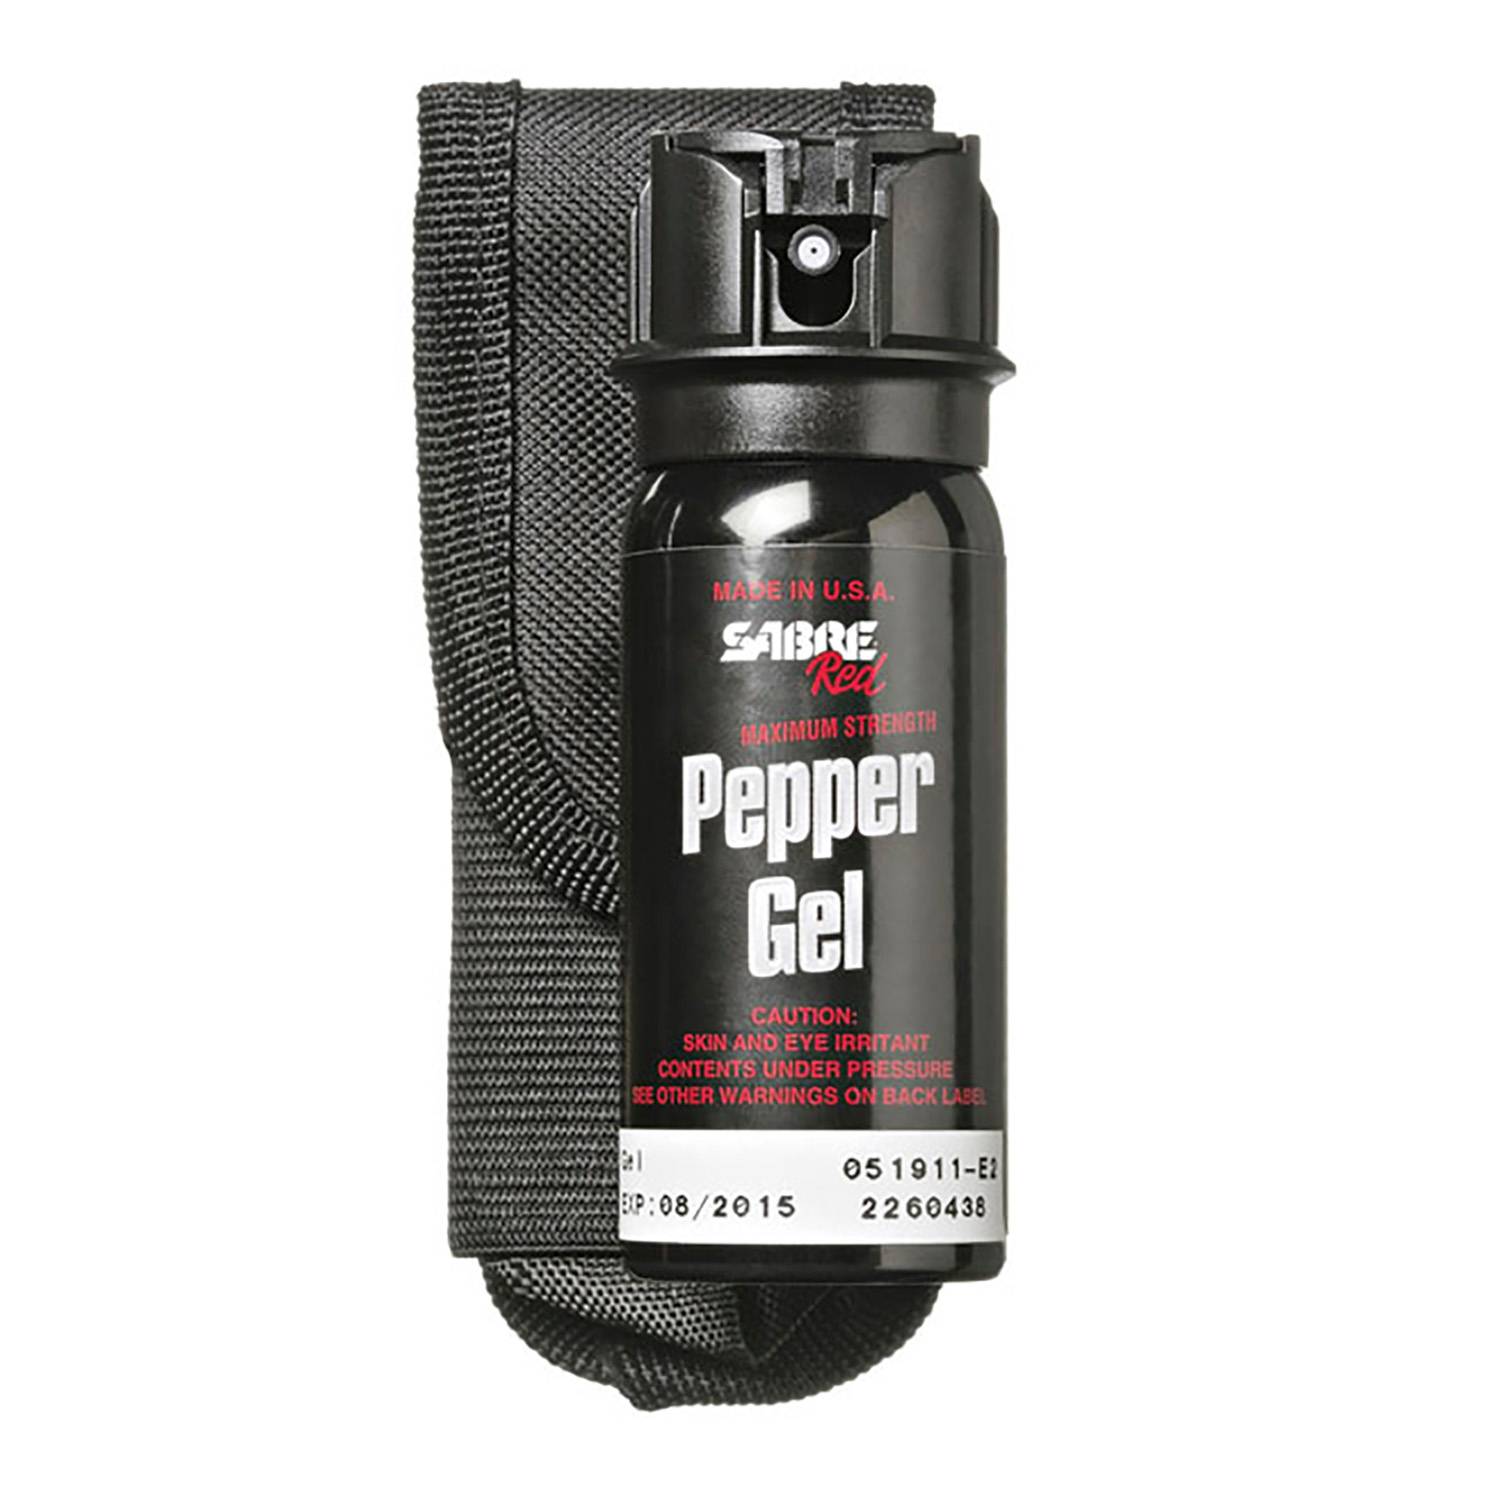 Sabre Tactical Pepper Gel with Flip Top & Belt Holster